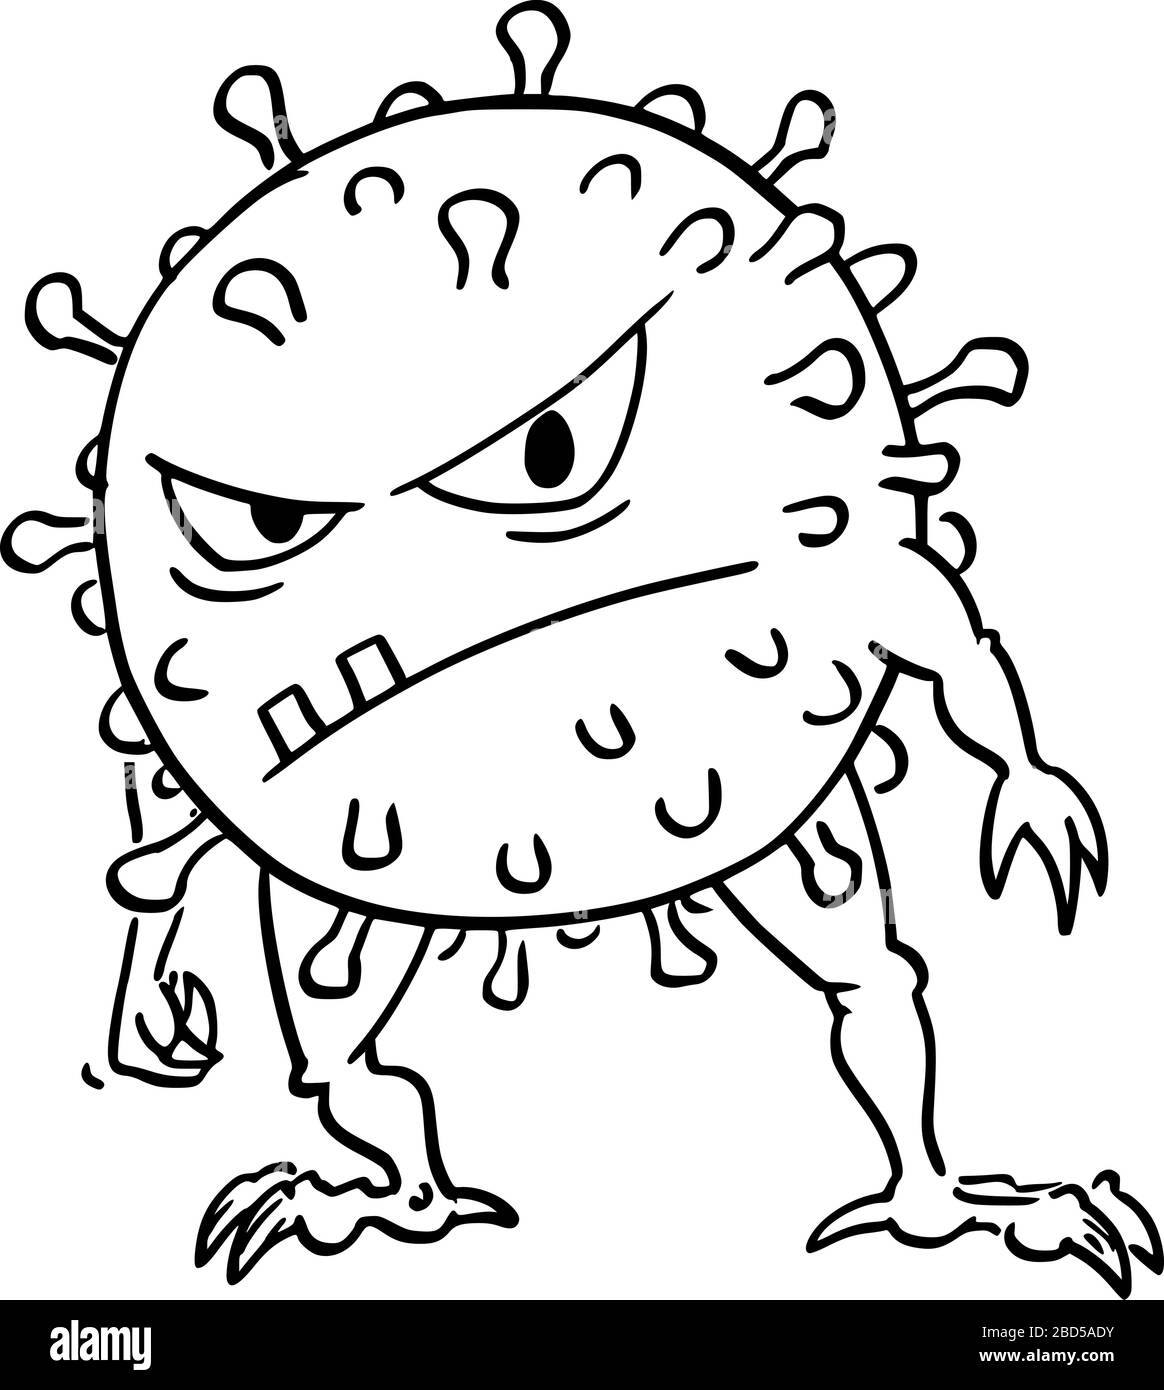 Cartoni animati vettoriali divertente illustrazione di divertente mostro del virus coronavirus COVID-19 pazzo. Illustrazione Vettoriale